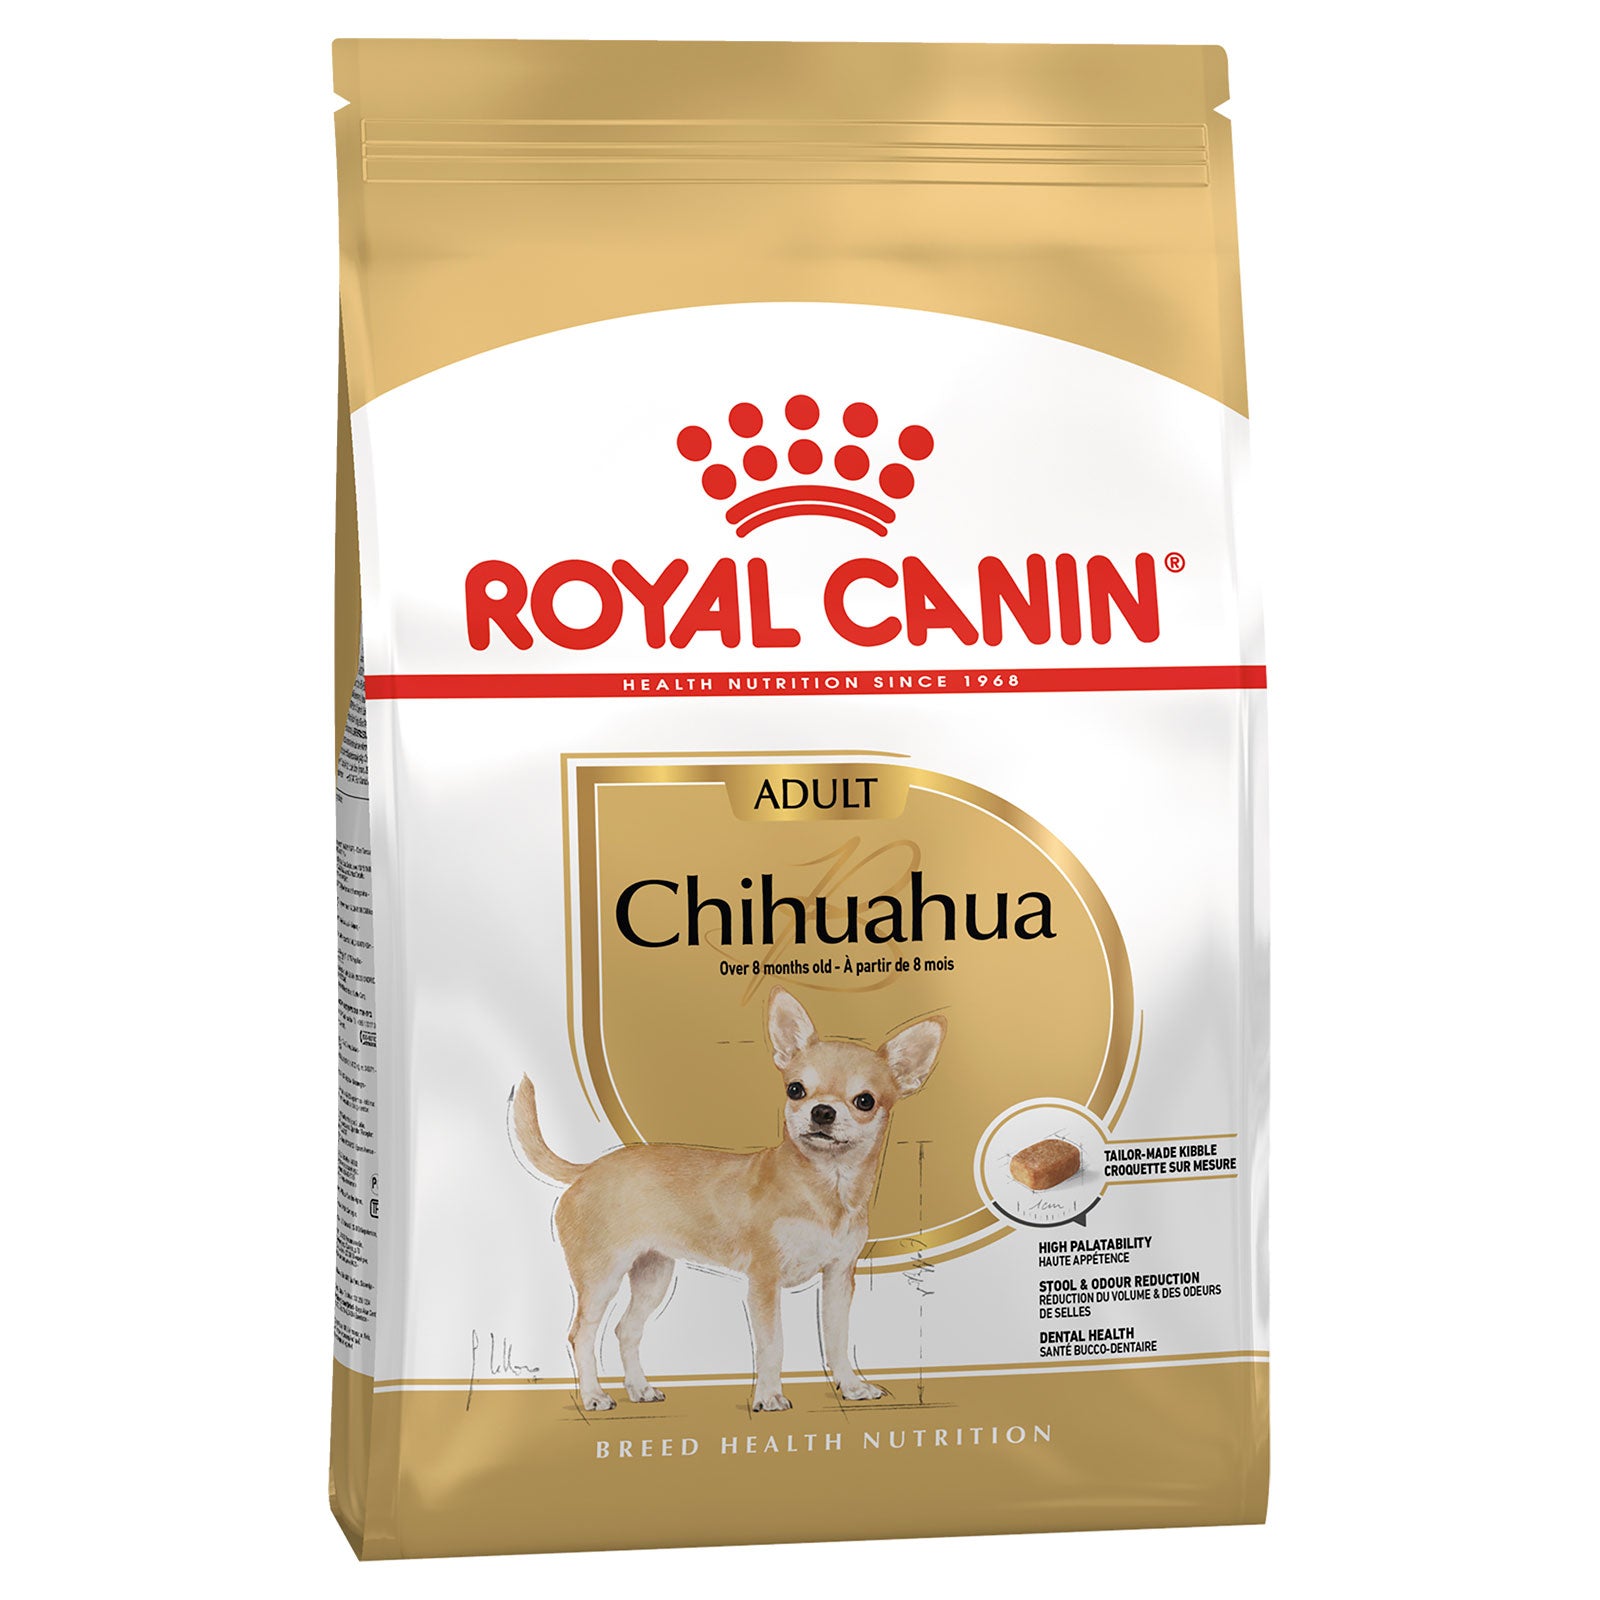 Royal Canin Dog Food Adult Chihuahua